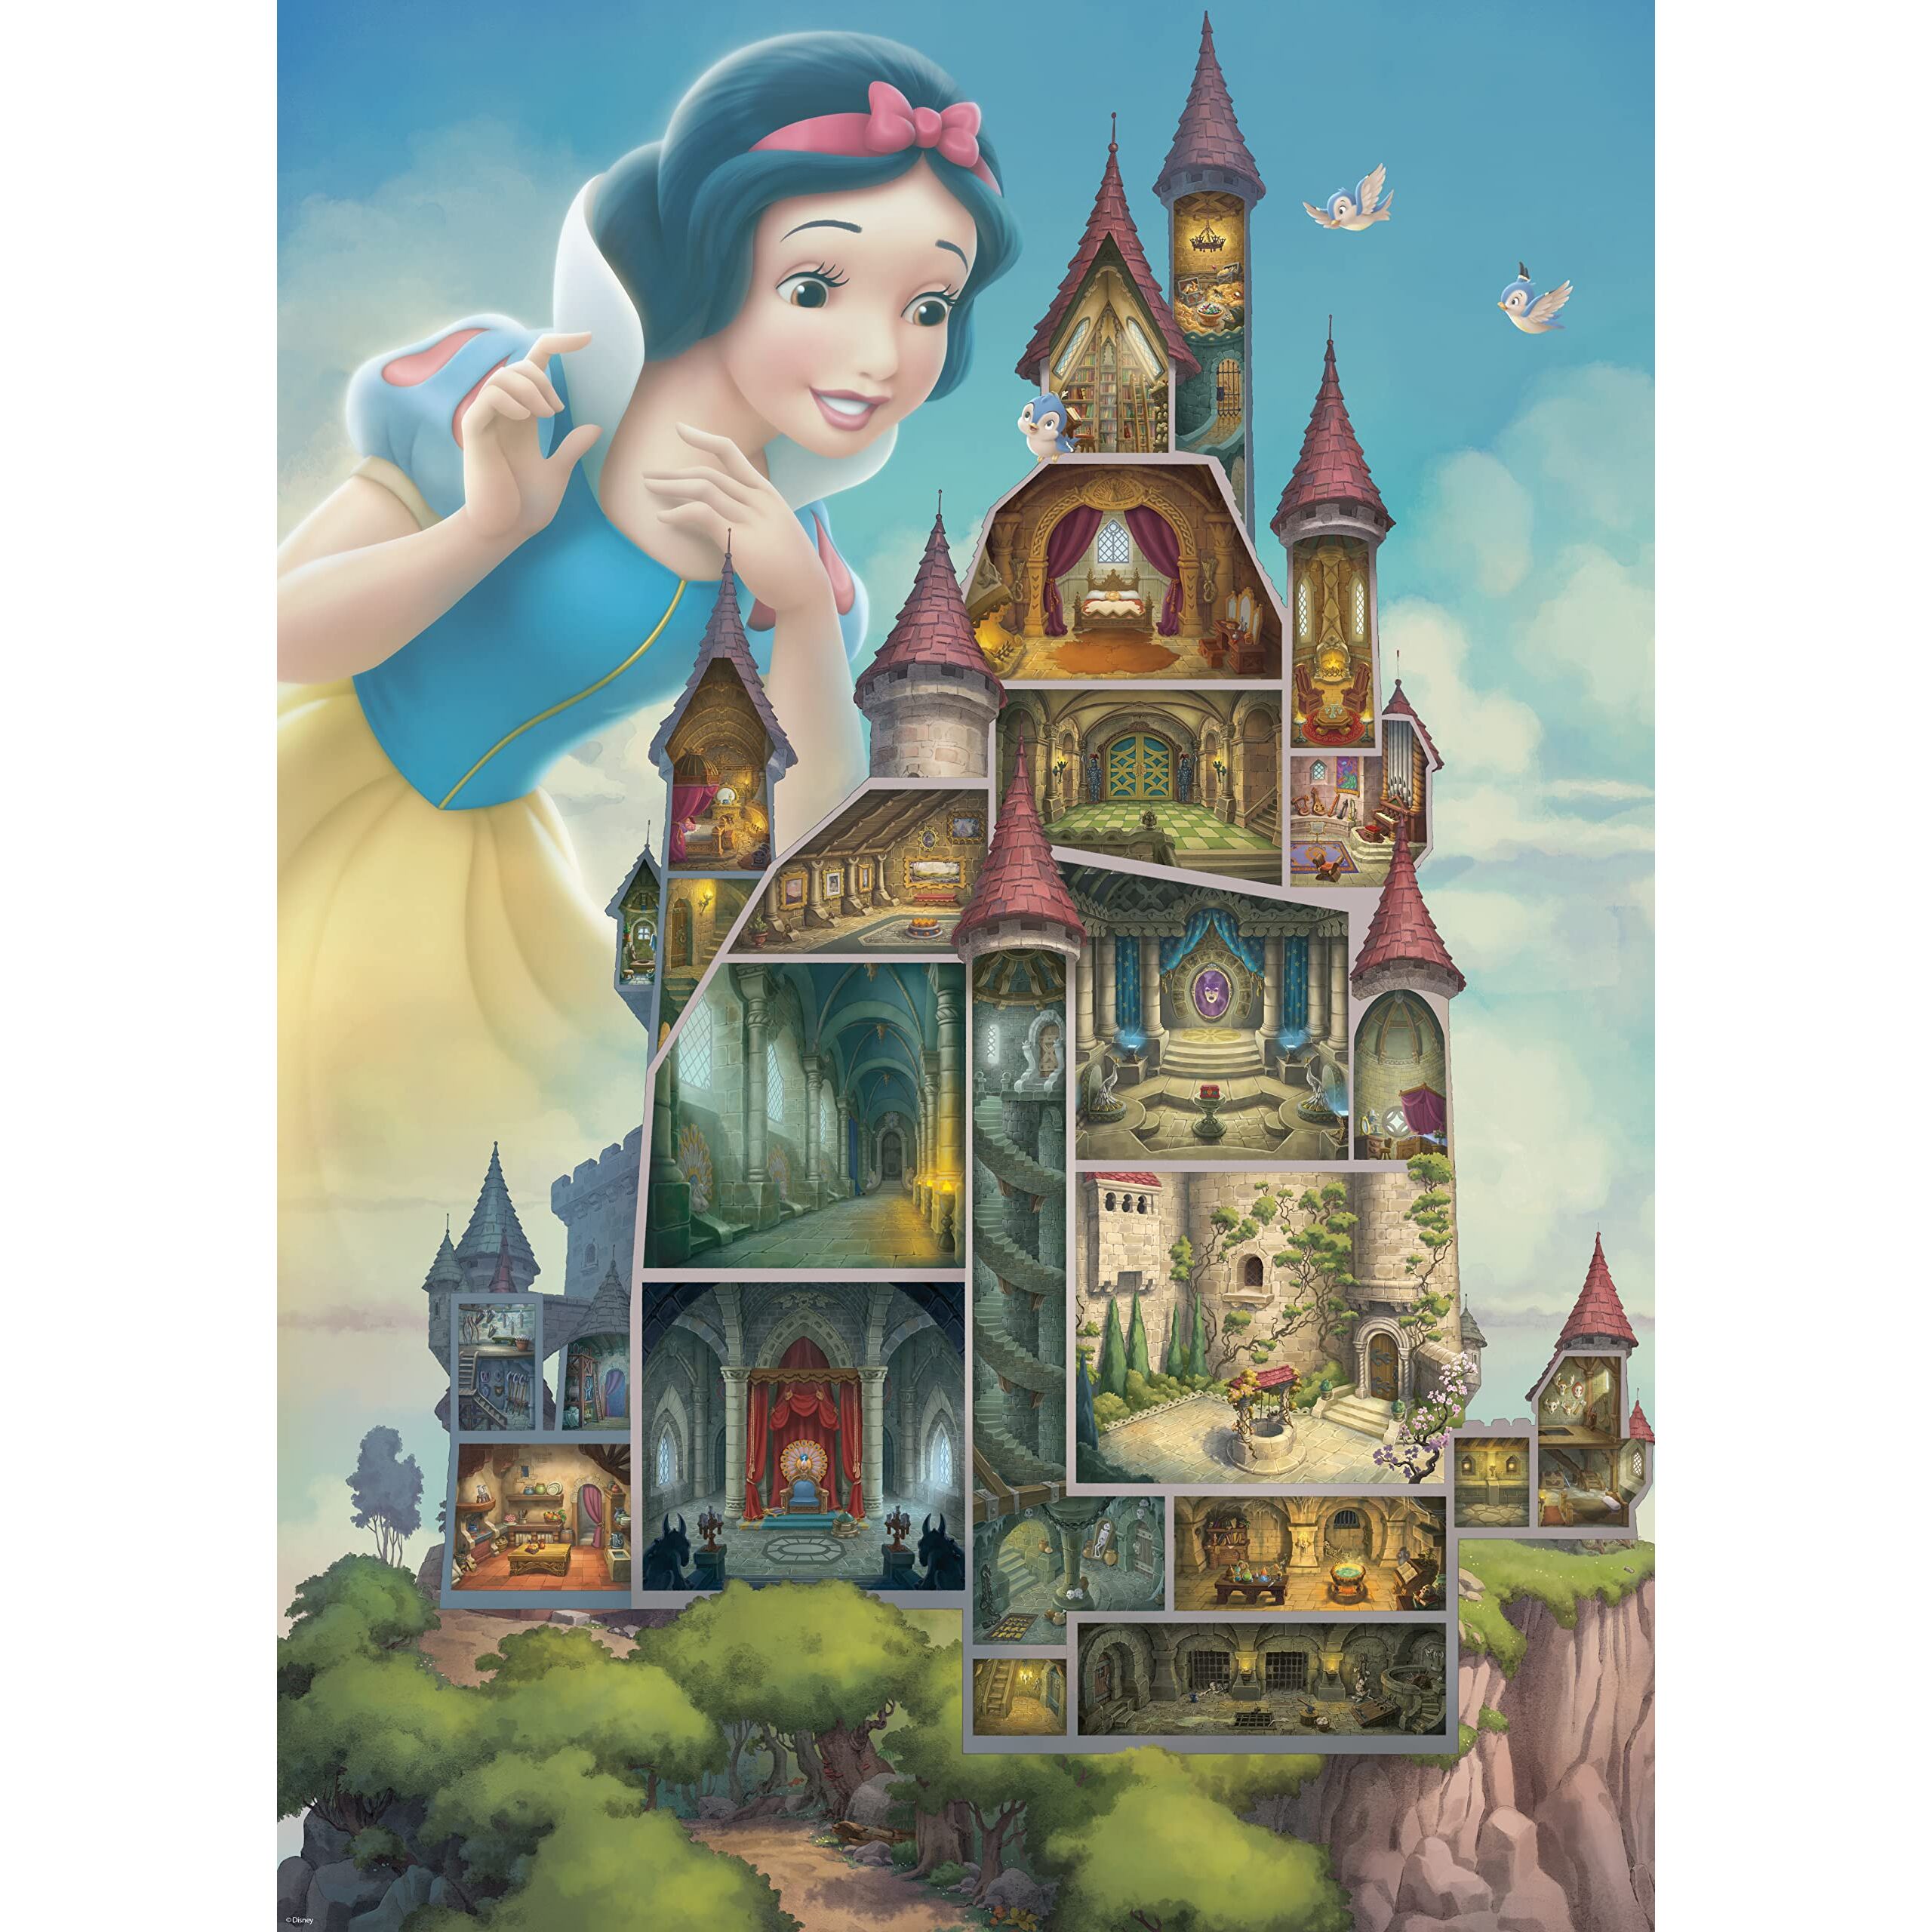 Disney - Puzzle Castle Collection : Belle (La Belle et la Bête